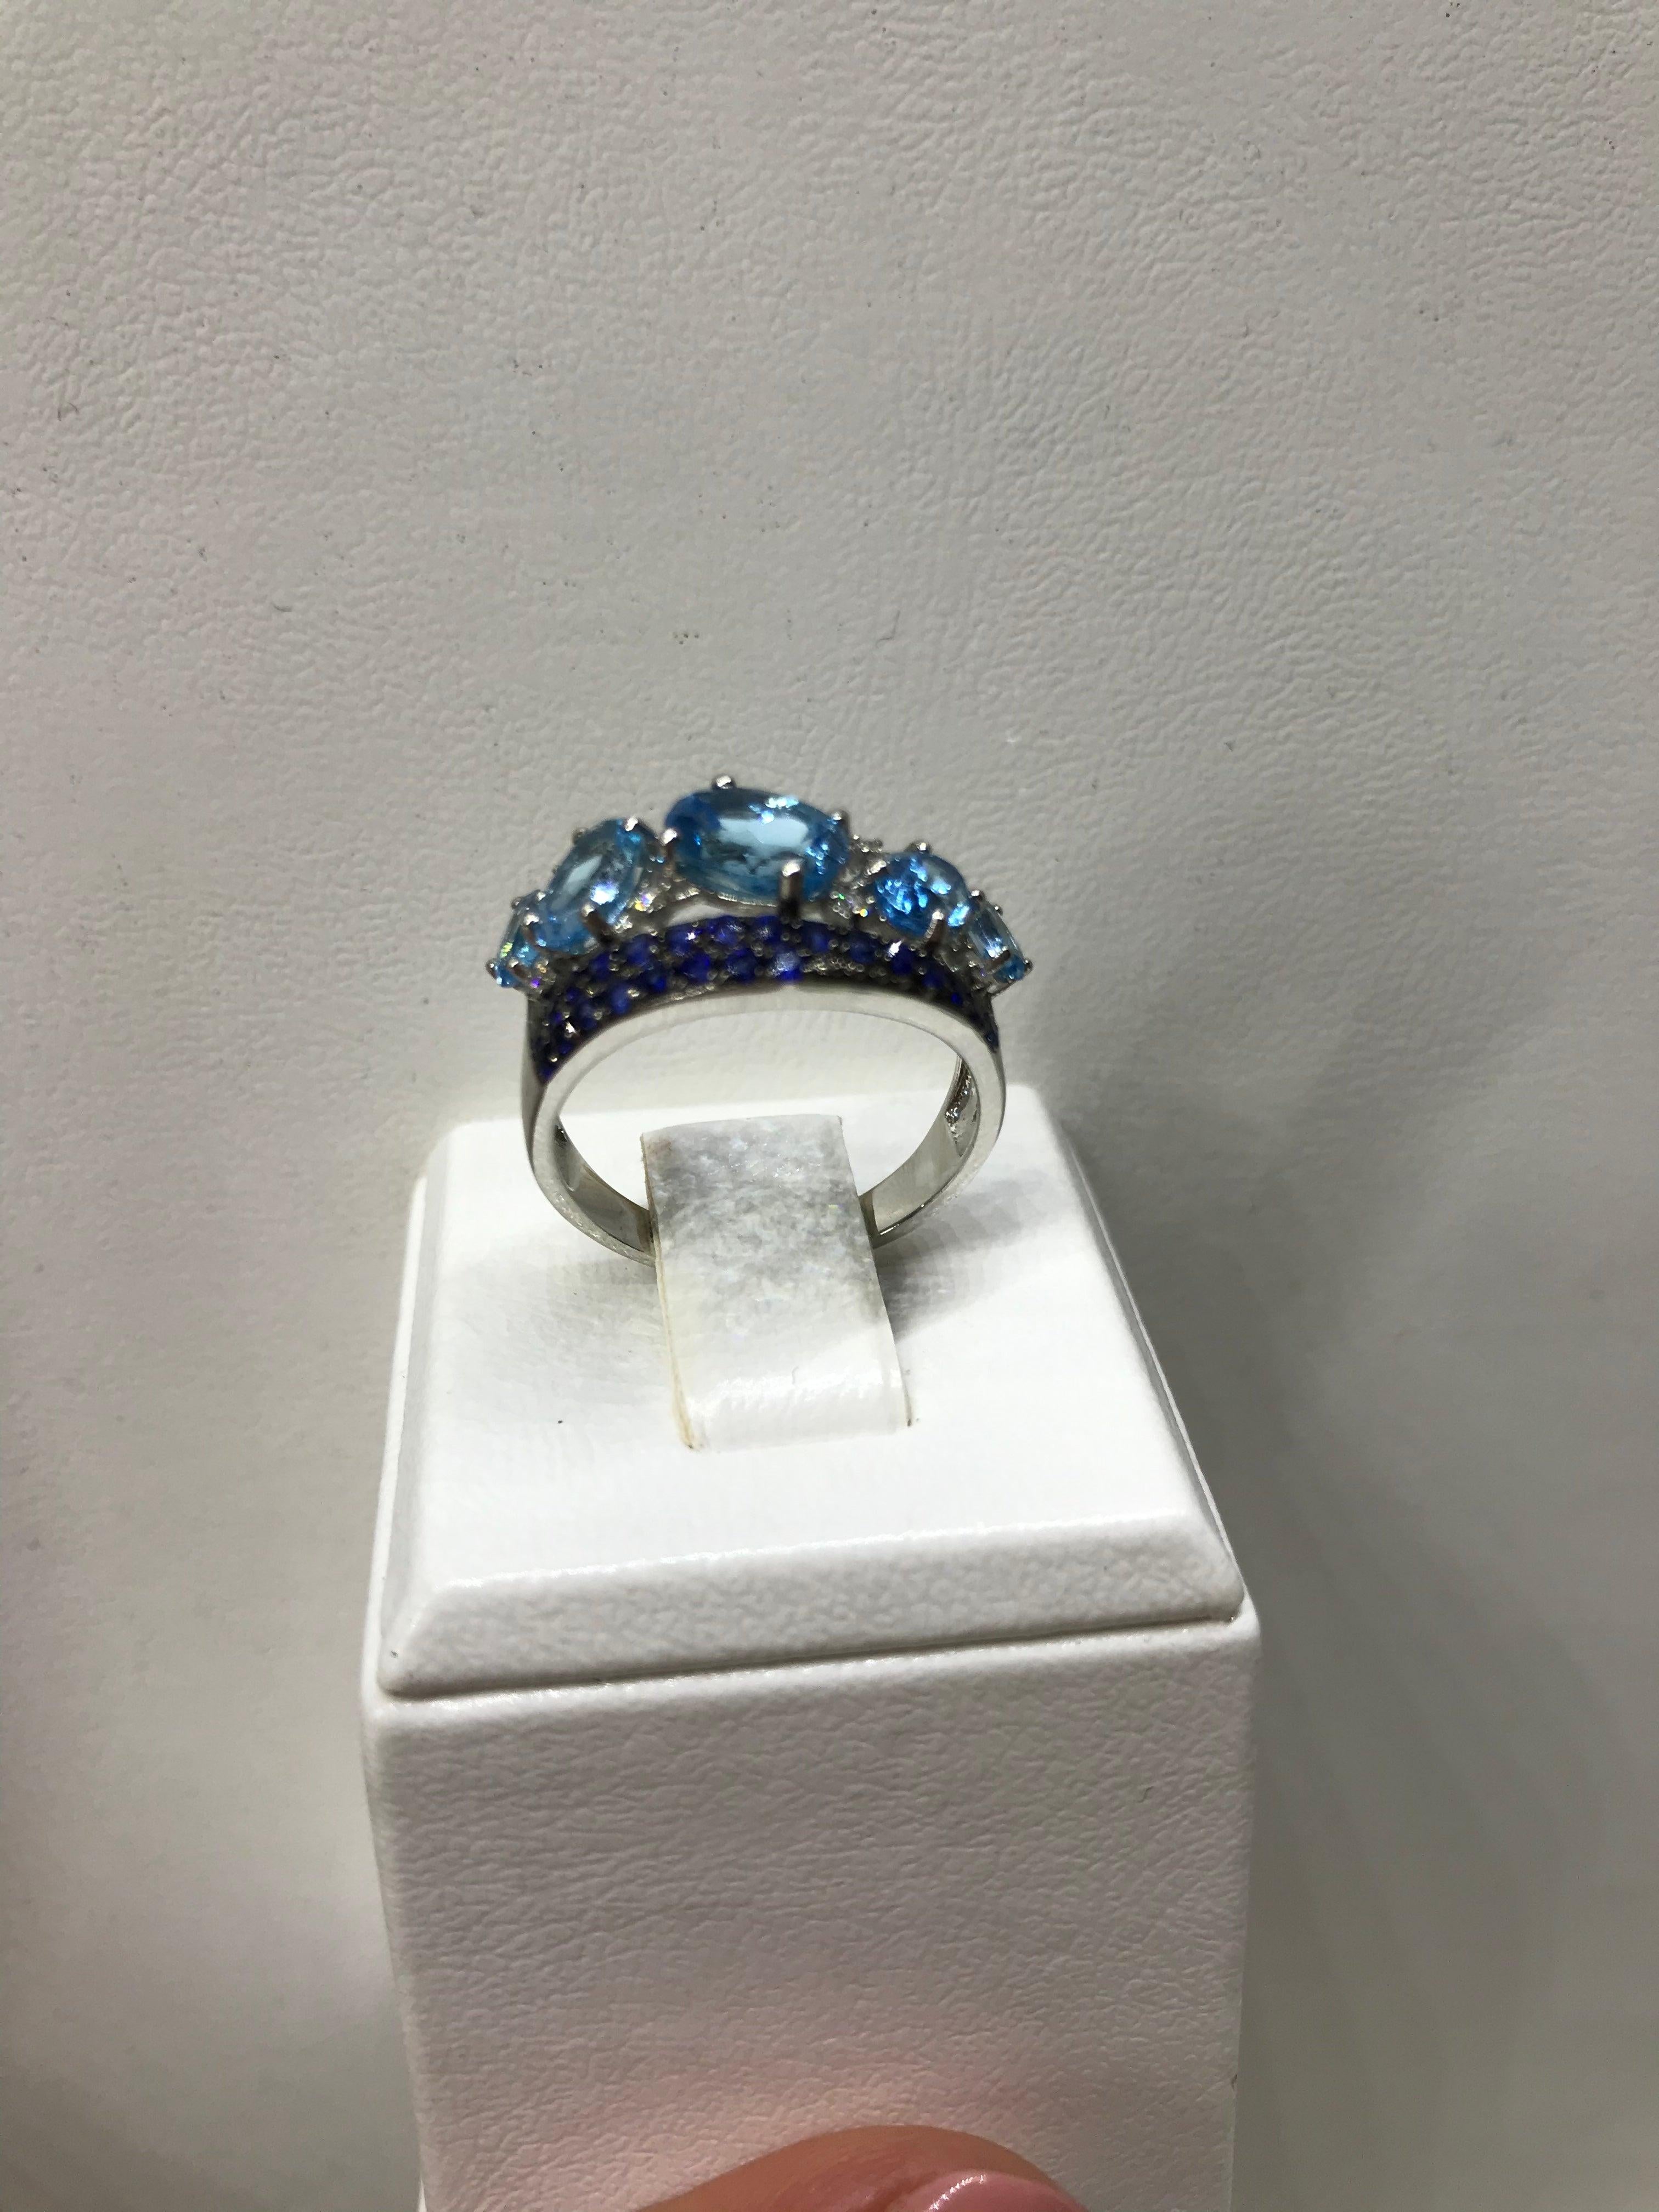 For Sale:  Impressive Blue Topaz Blue Sapphire White Diamond White Gold Statement Ring 7